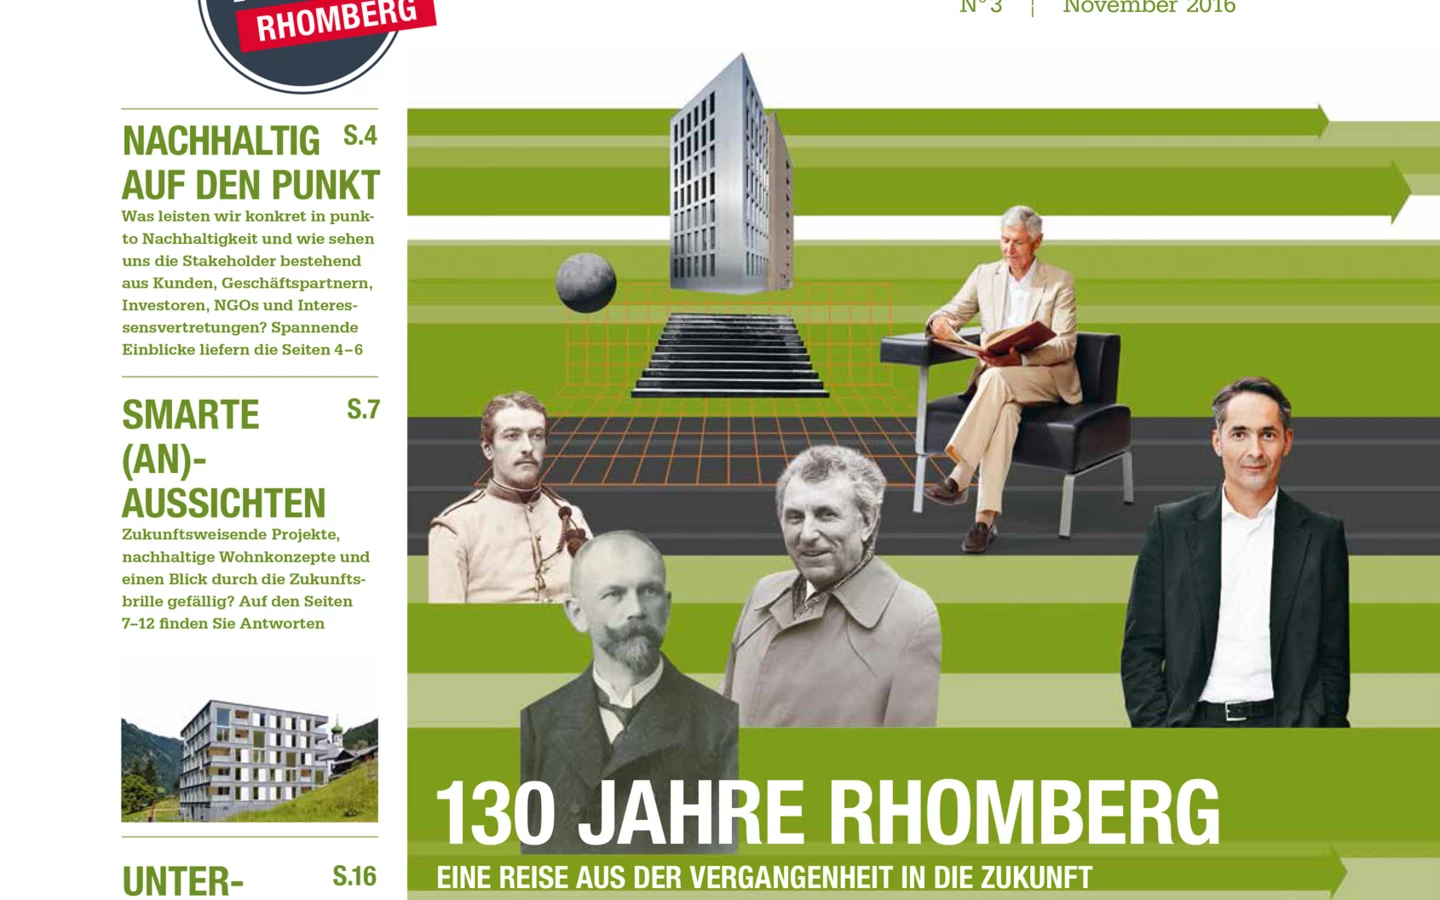 Gewinner mit 28 Seiten: Der „SinnEntFalter“ der Rhomberg Gruppe wurde in Berlin mit dem Econ-Award ausgezeichnet.